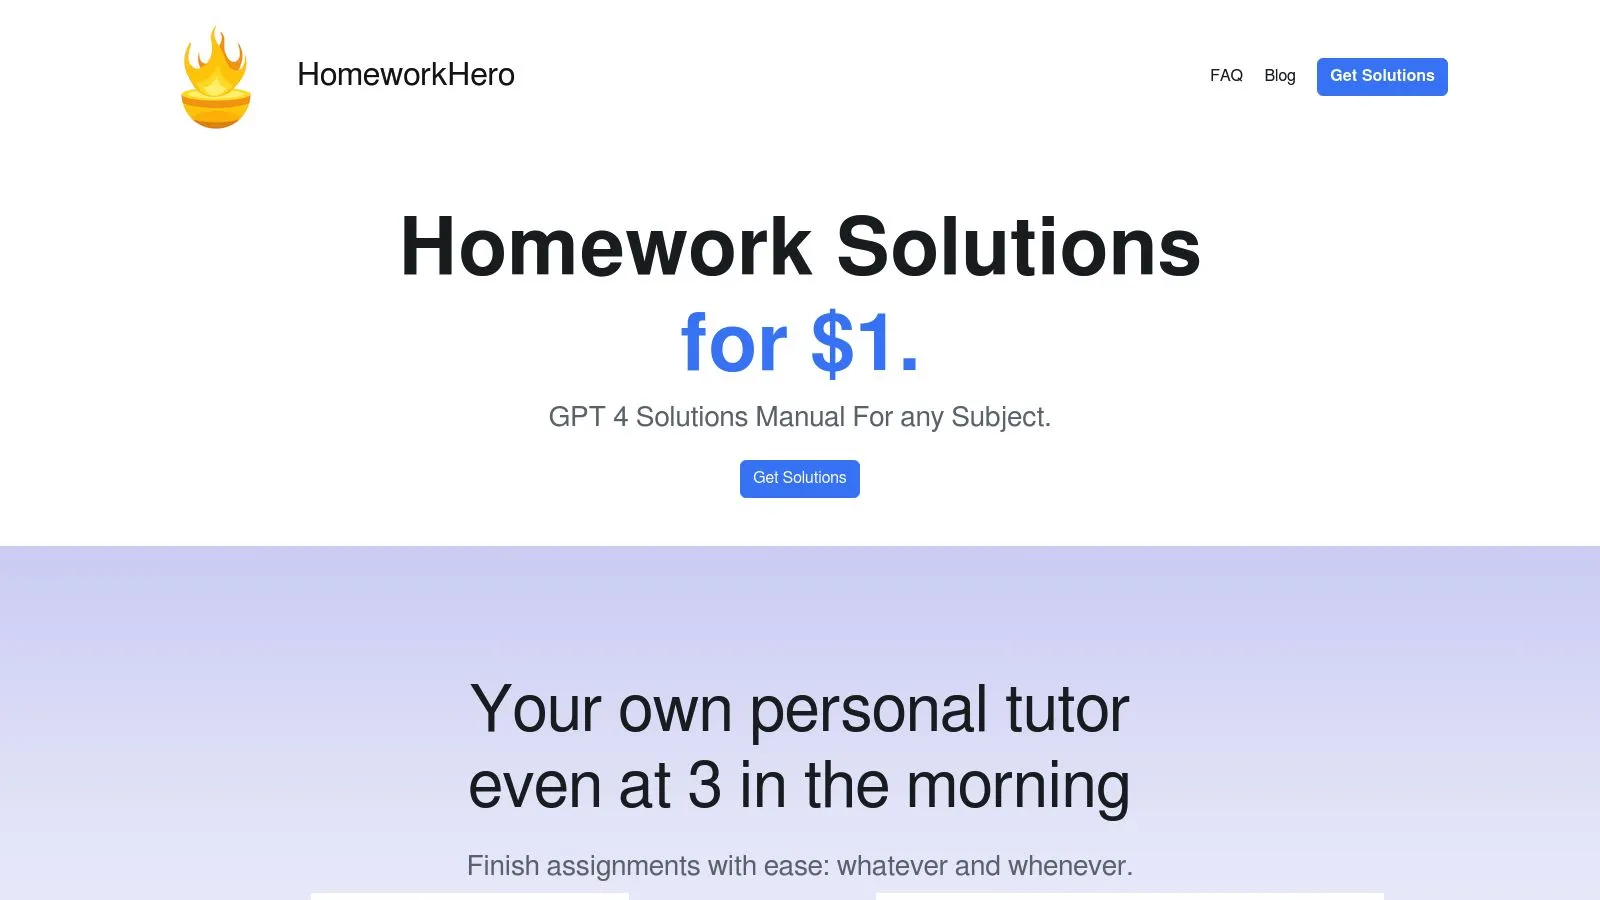 Featured image of Homework Hero website